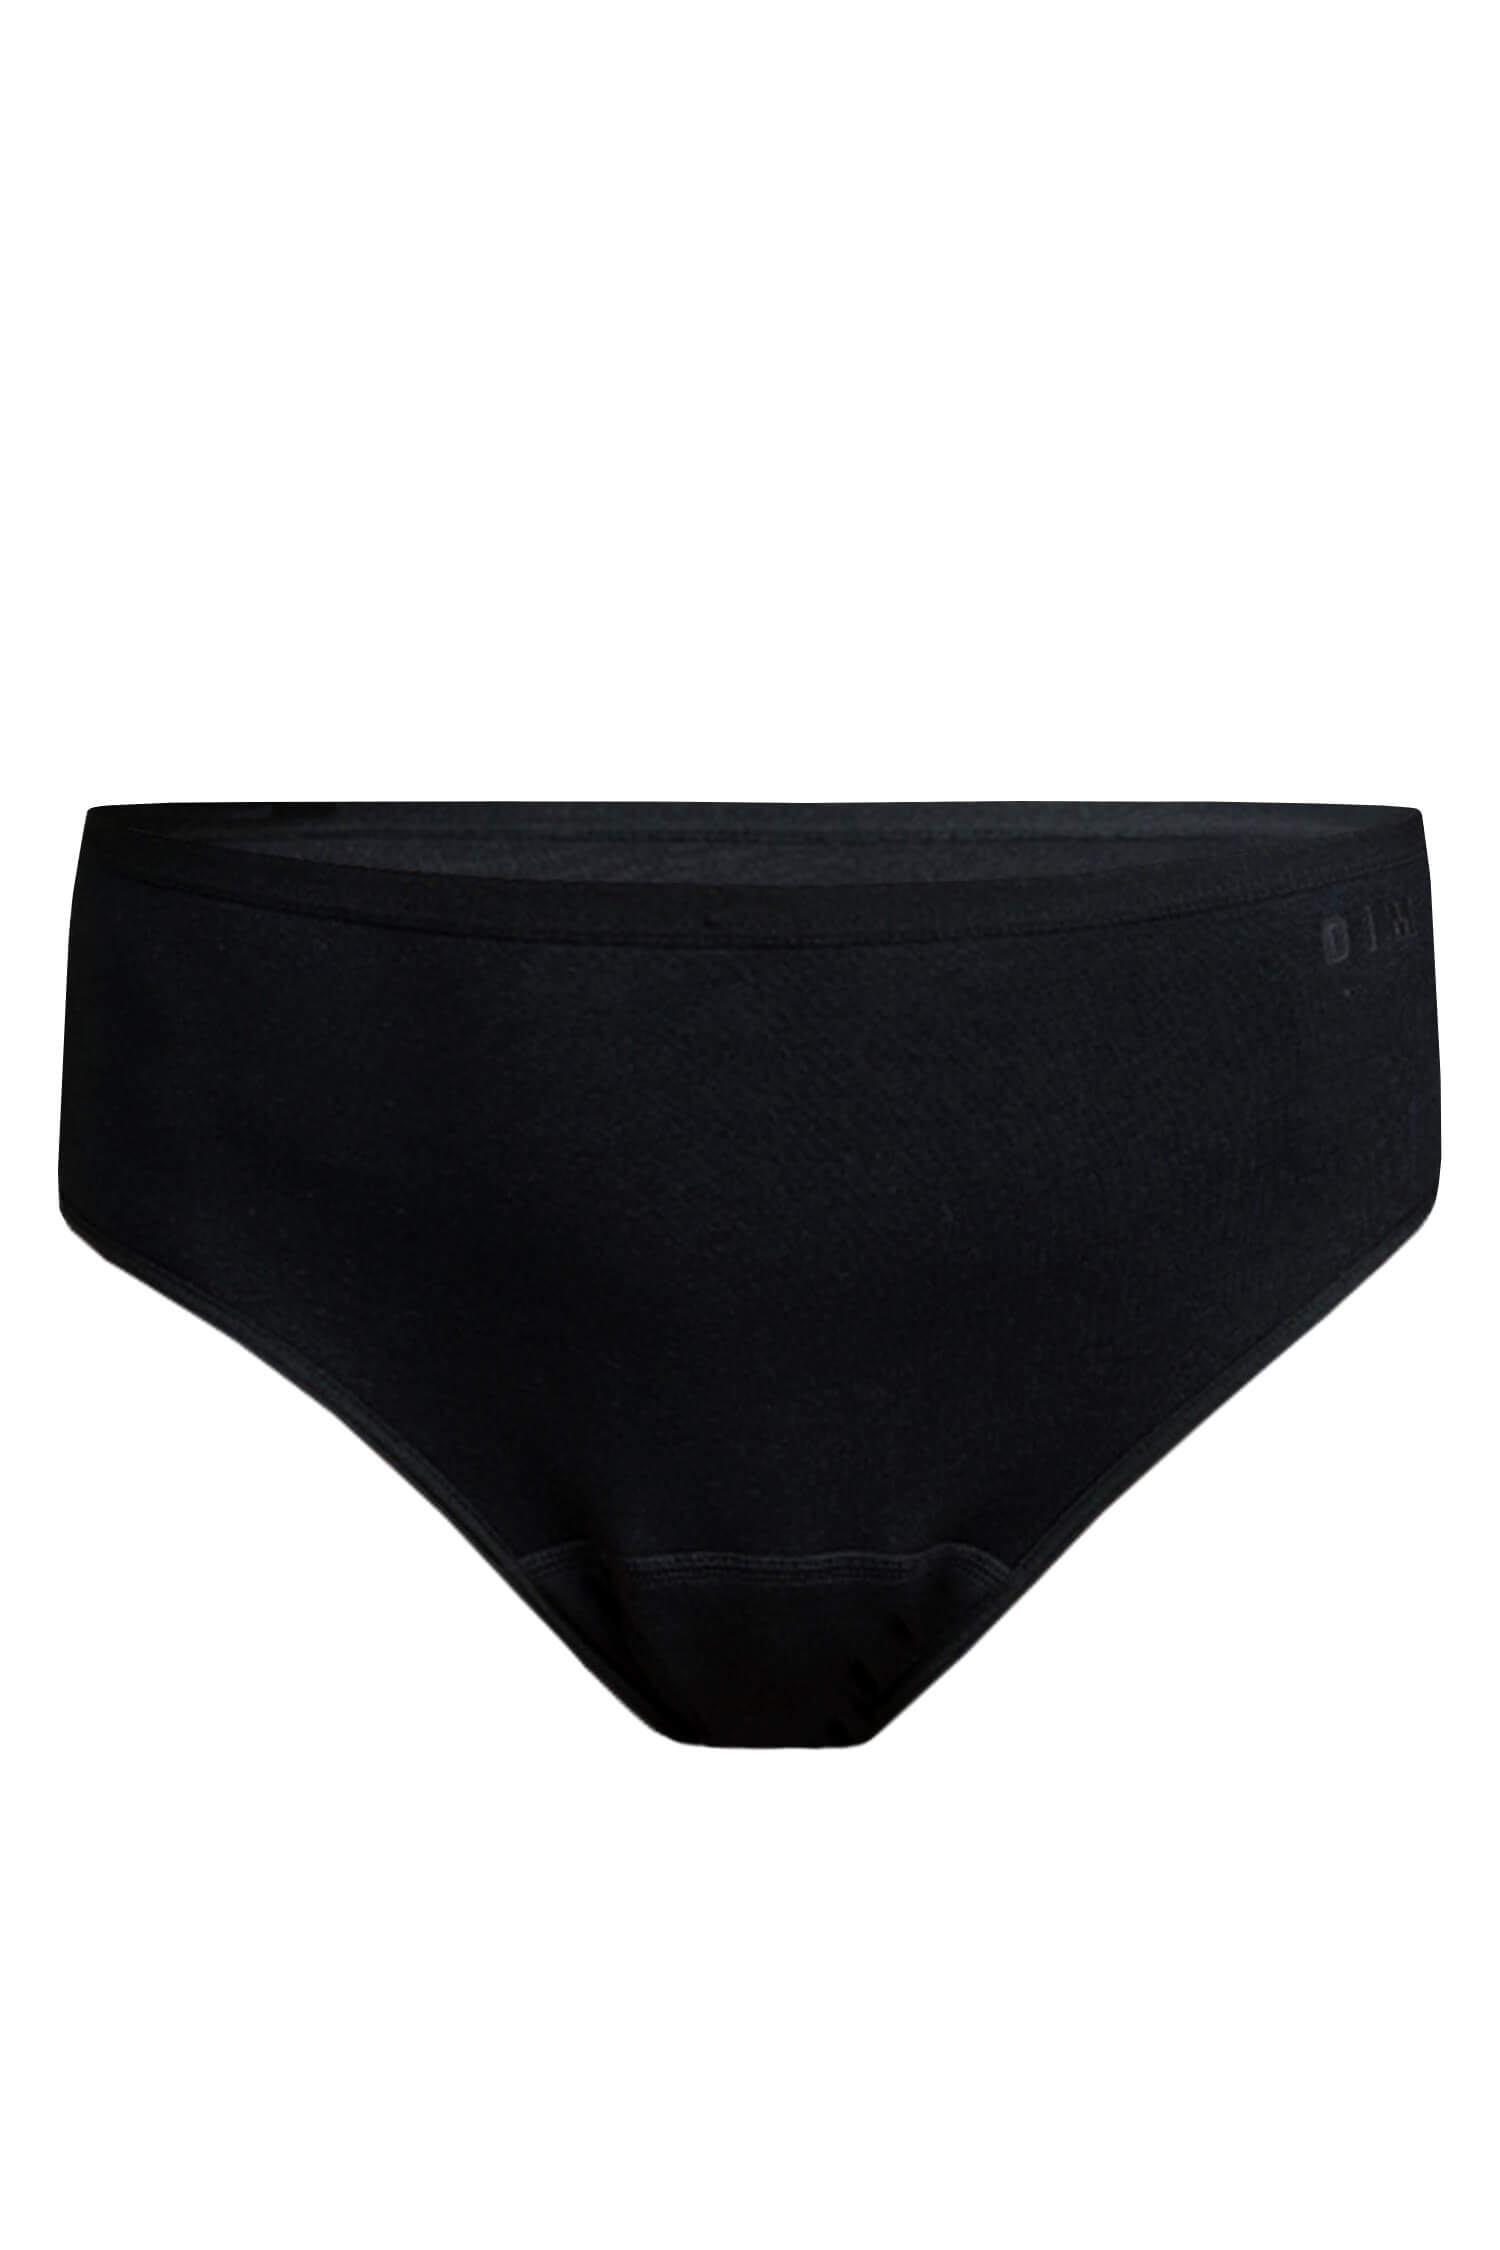 DIM hygienické absorpční kalhotky - Hygiene Midislip M černá